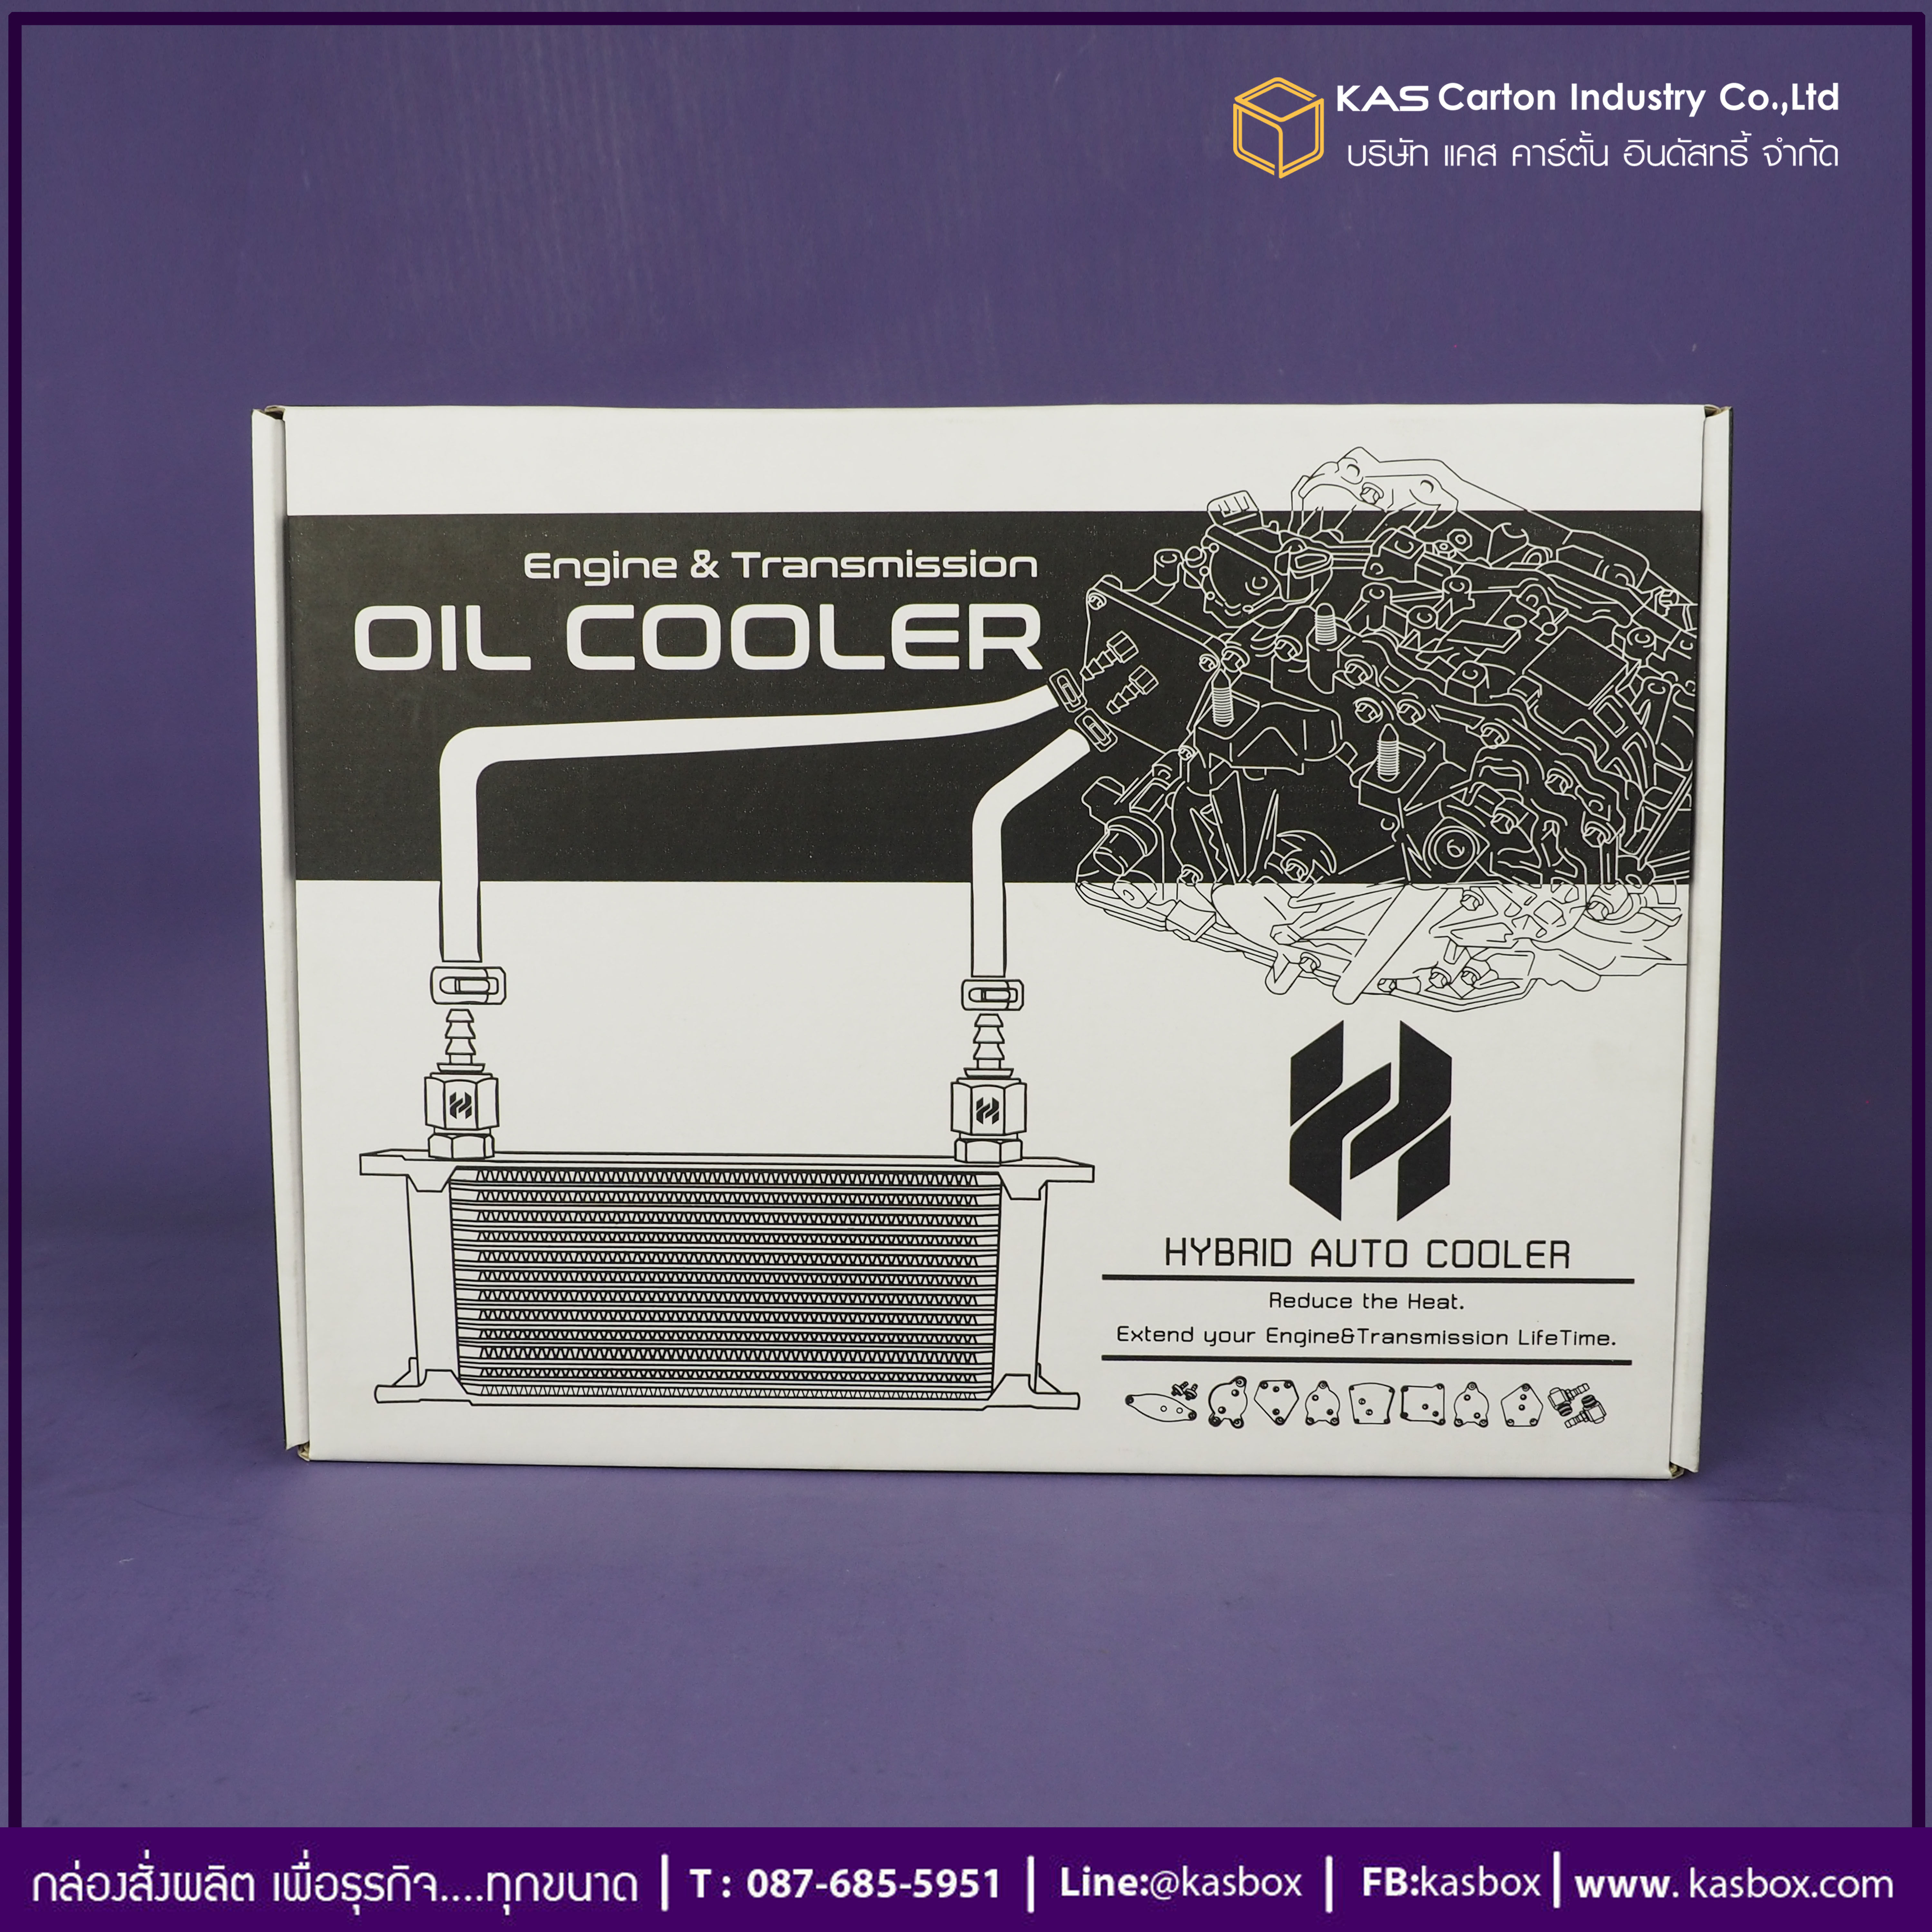 กล่องลูกฟูก สำเร็จรูป และ สั่งผลิต ตามความต้องการลูกค้า กล่องลูกฟูก SME กล่องกระดาษลูกฟูก Oil Cooler